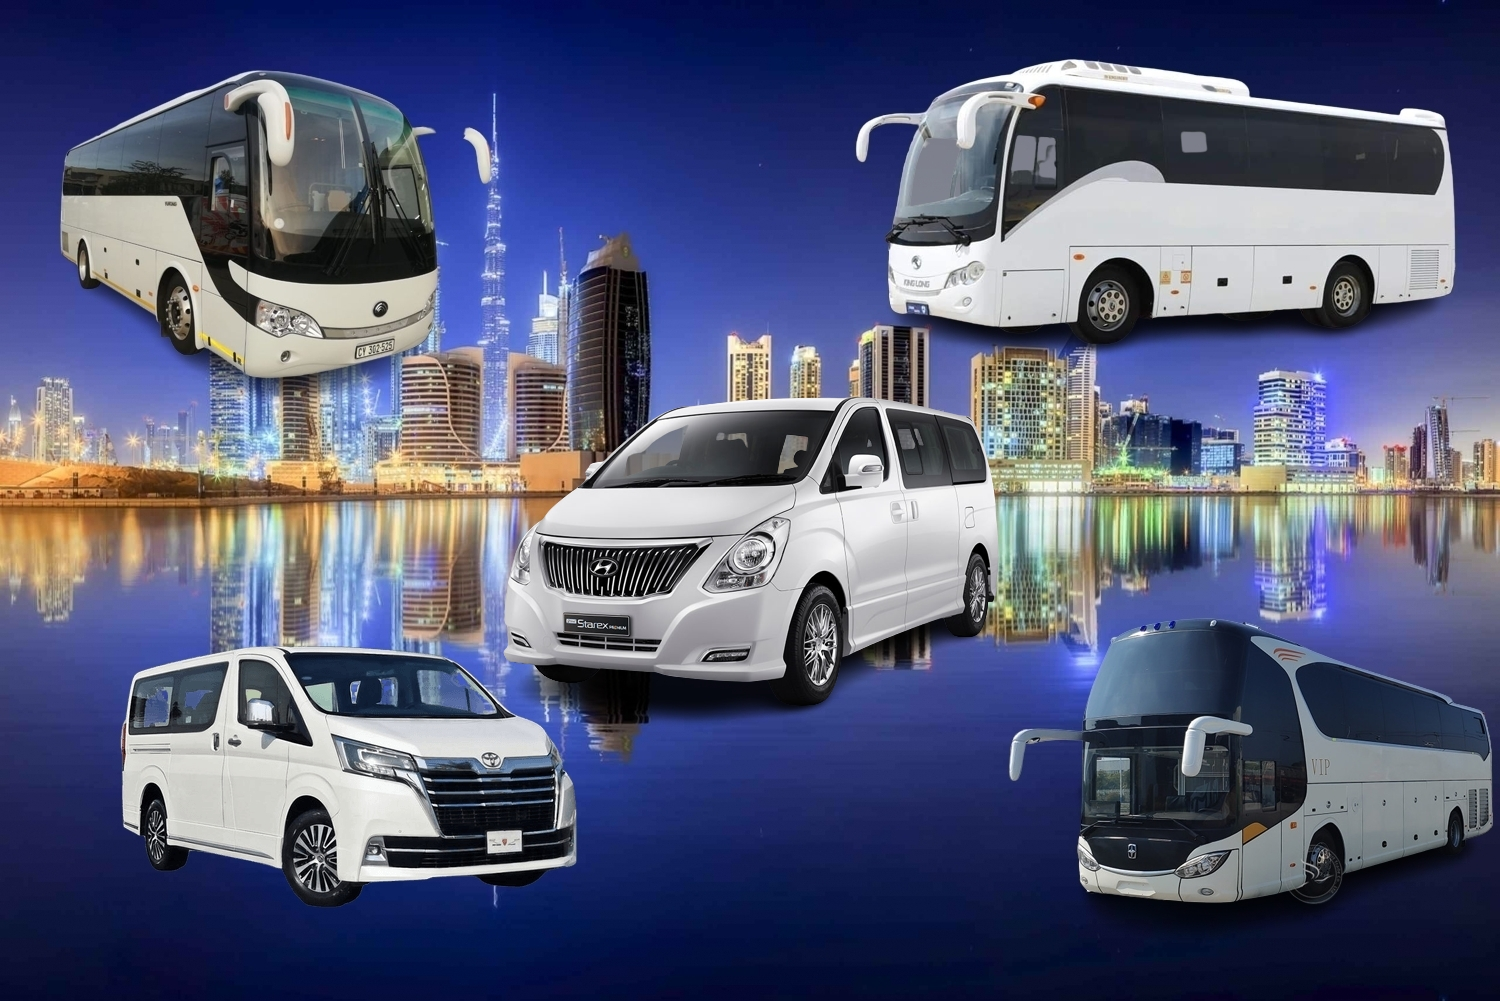 sightseeing-night-tour-Dubai-bus-rental